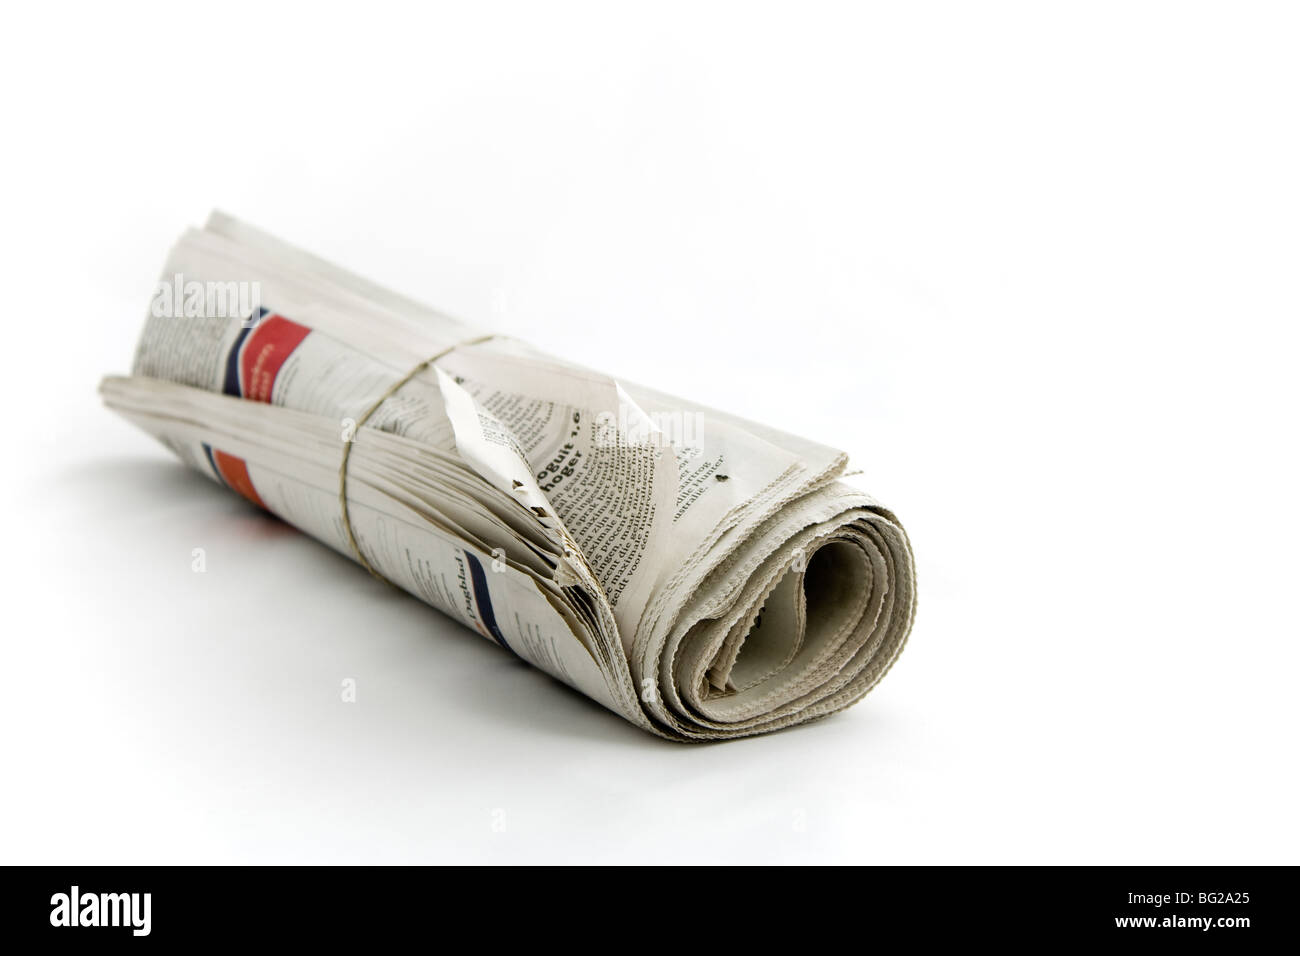 Zeitung mit Gummiband auf einfachen Hintergrund gedreht mit Fokus auf Vordergrund gerollt Stockfoto